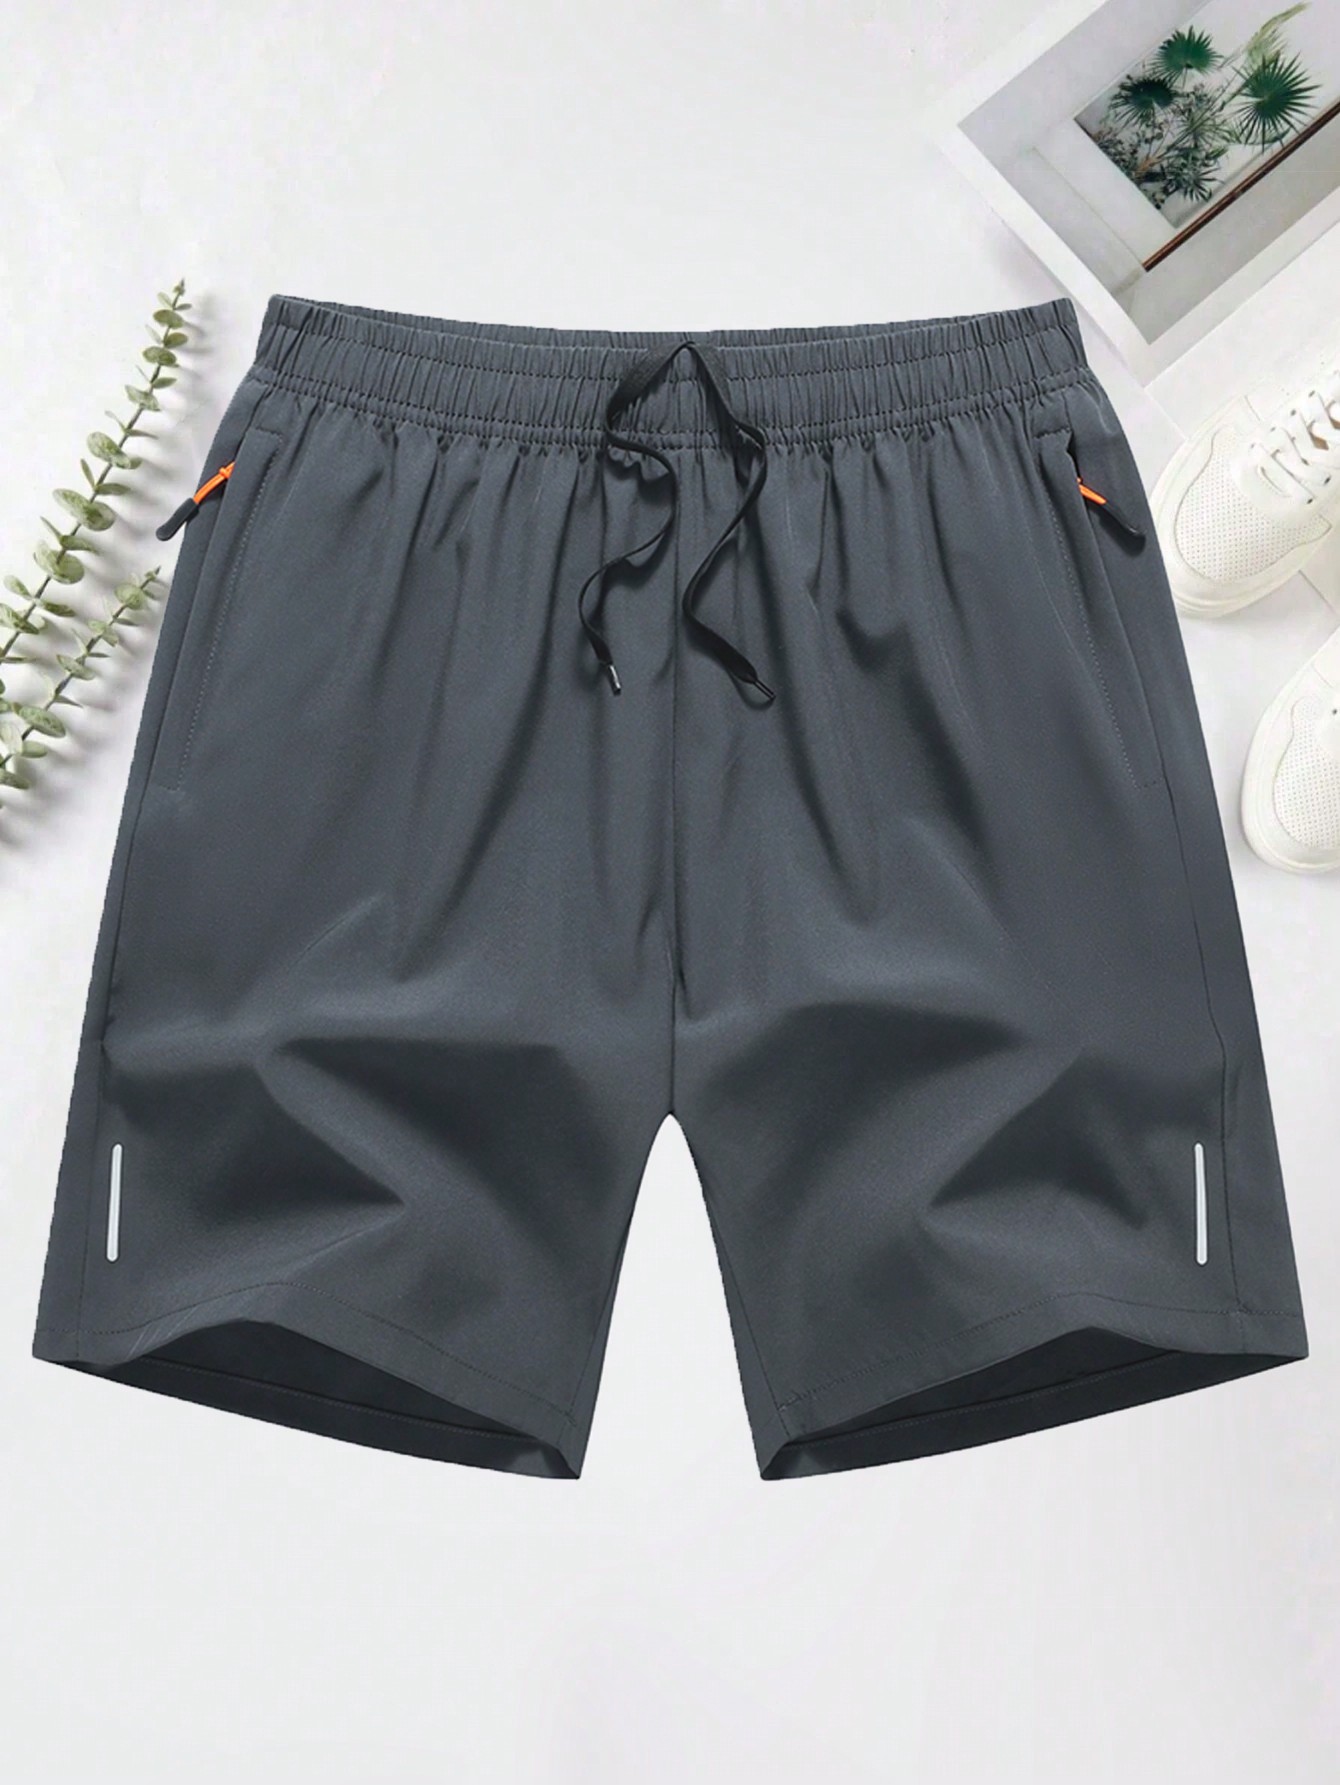 Мужские повседневные спортивные шорты с эластичной резинкой на талии, светло-серый брюки спортивные мужские dysot серые